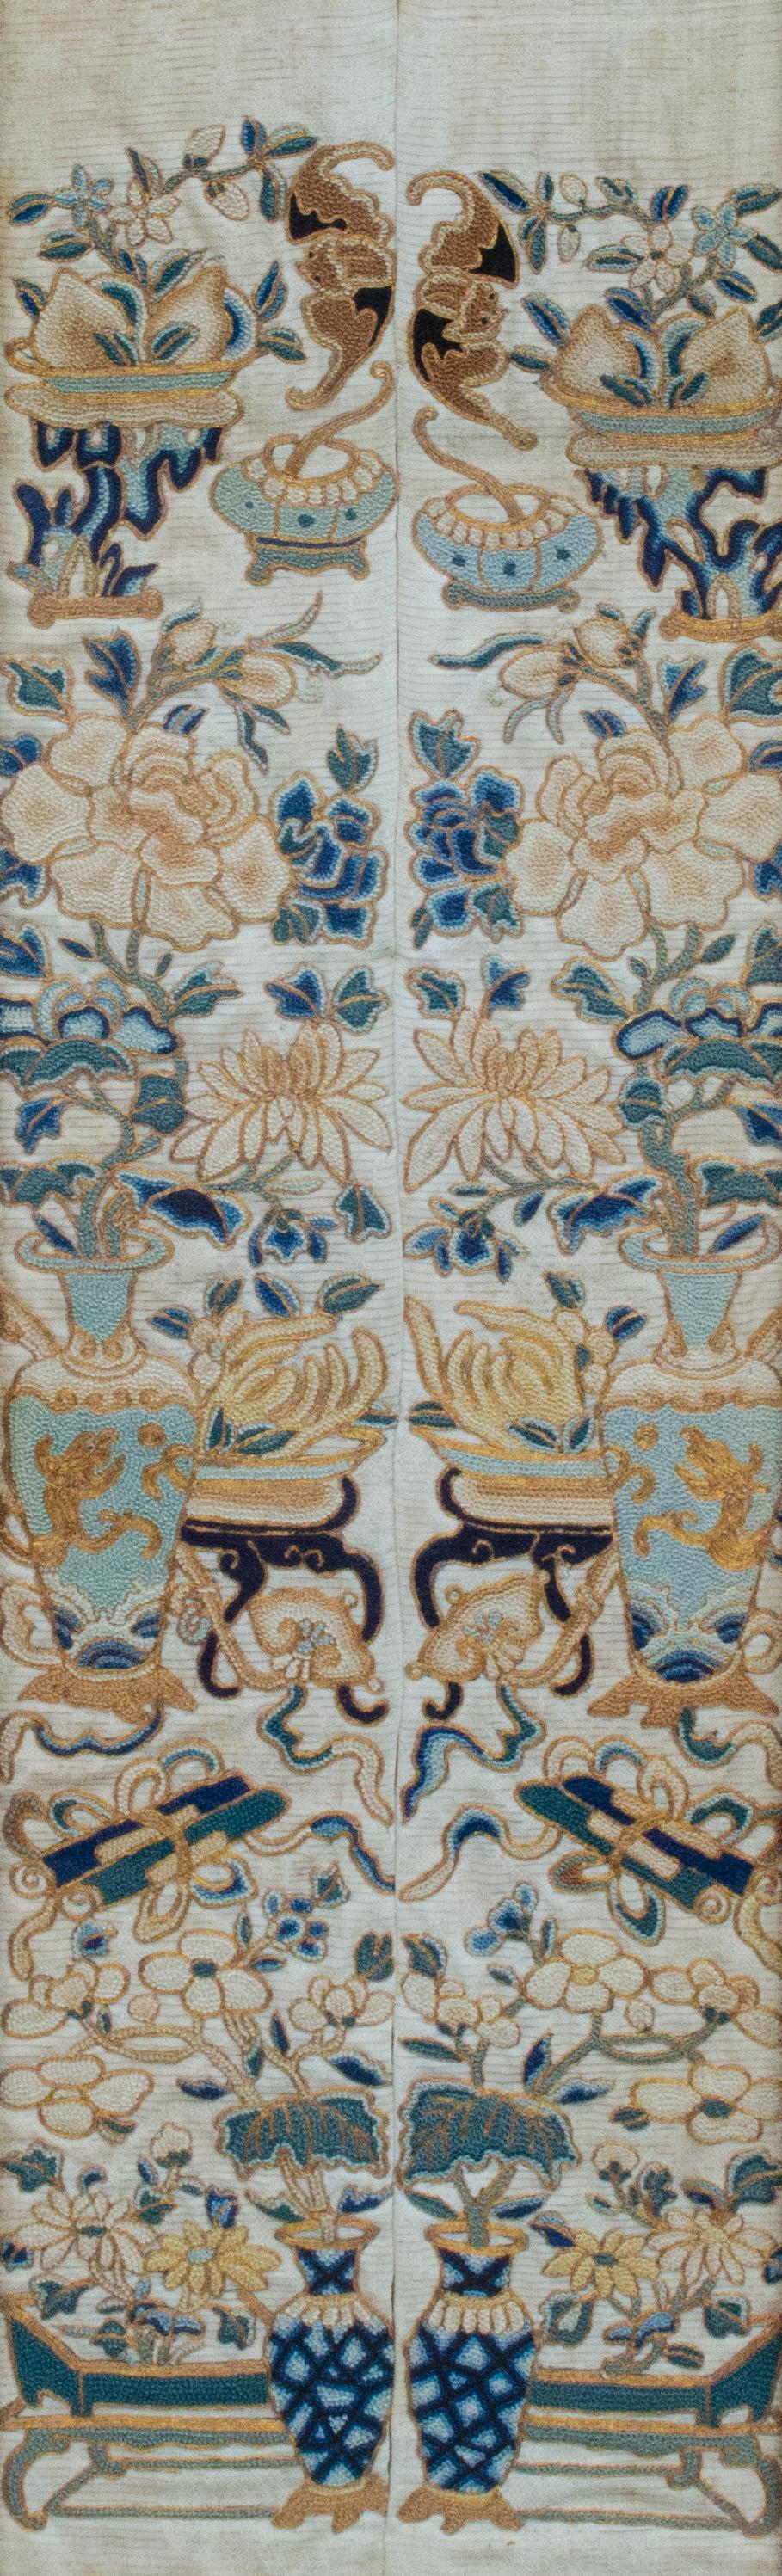 Bestickte Textilien aus der Qing-Dynastie